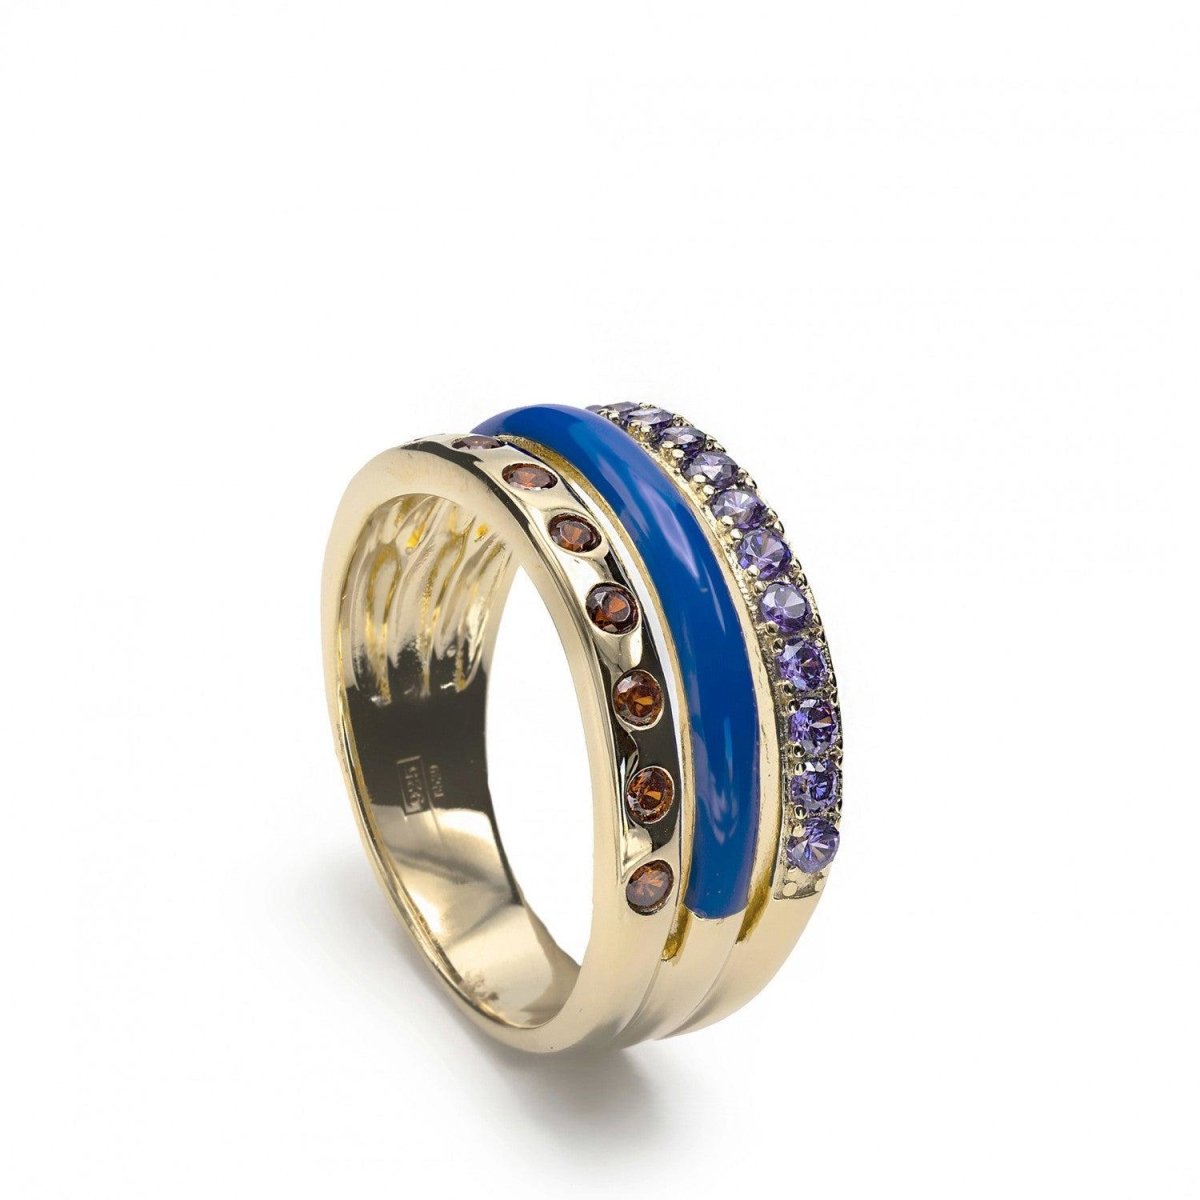 Anillo · Anillos anchos diseño combinado de esmalte azul y gemas